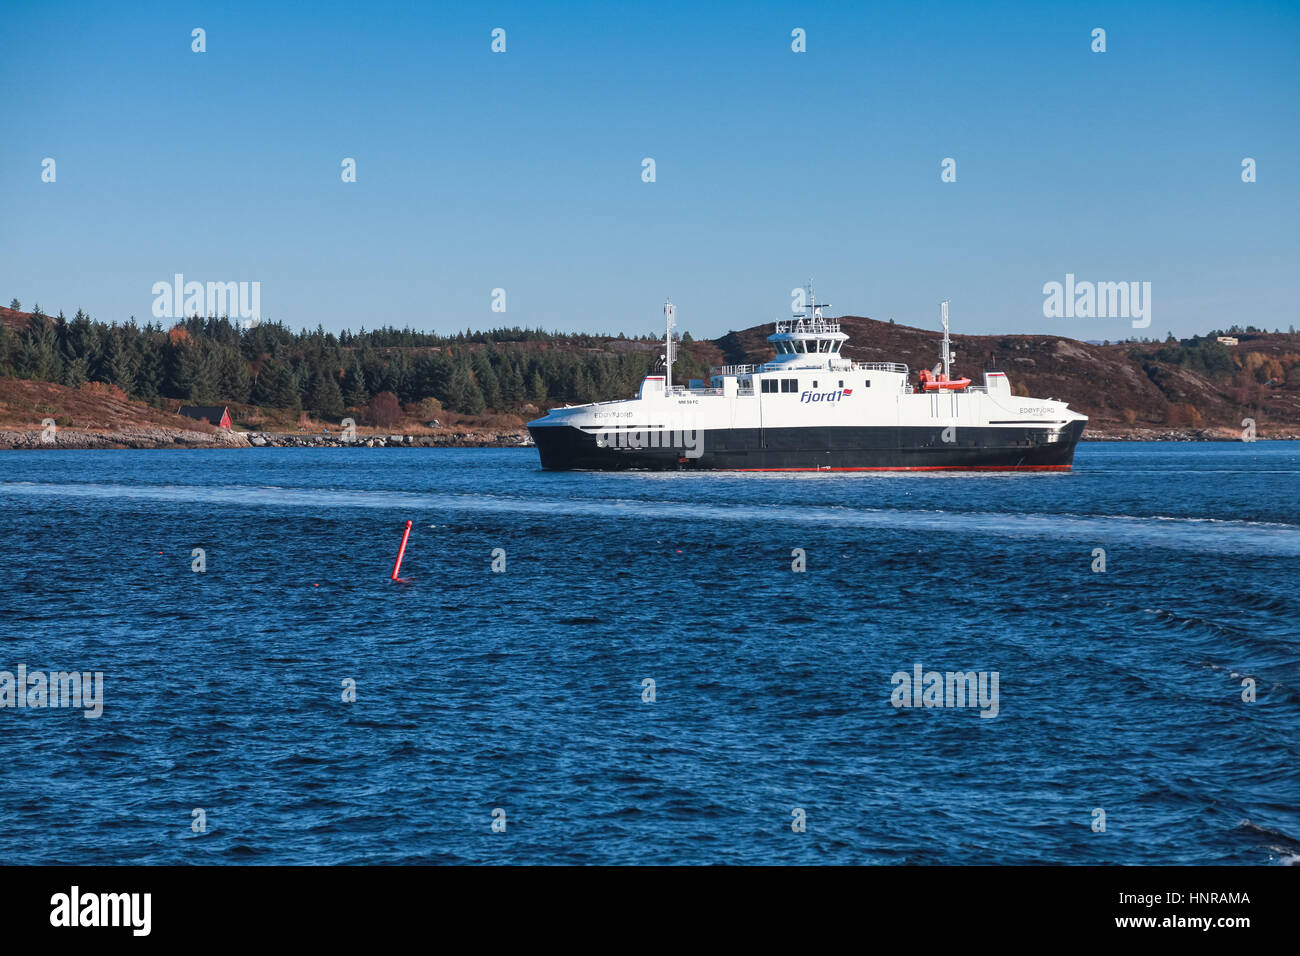 Trondheim, Norvegia - 17 Ottobre 2016: traghetto roll on-roll off da Edoyfjord Fjord1 operatore va sul mare di Norvegia, vista laterale. Trondheim, Norvegia Foto Stock